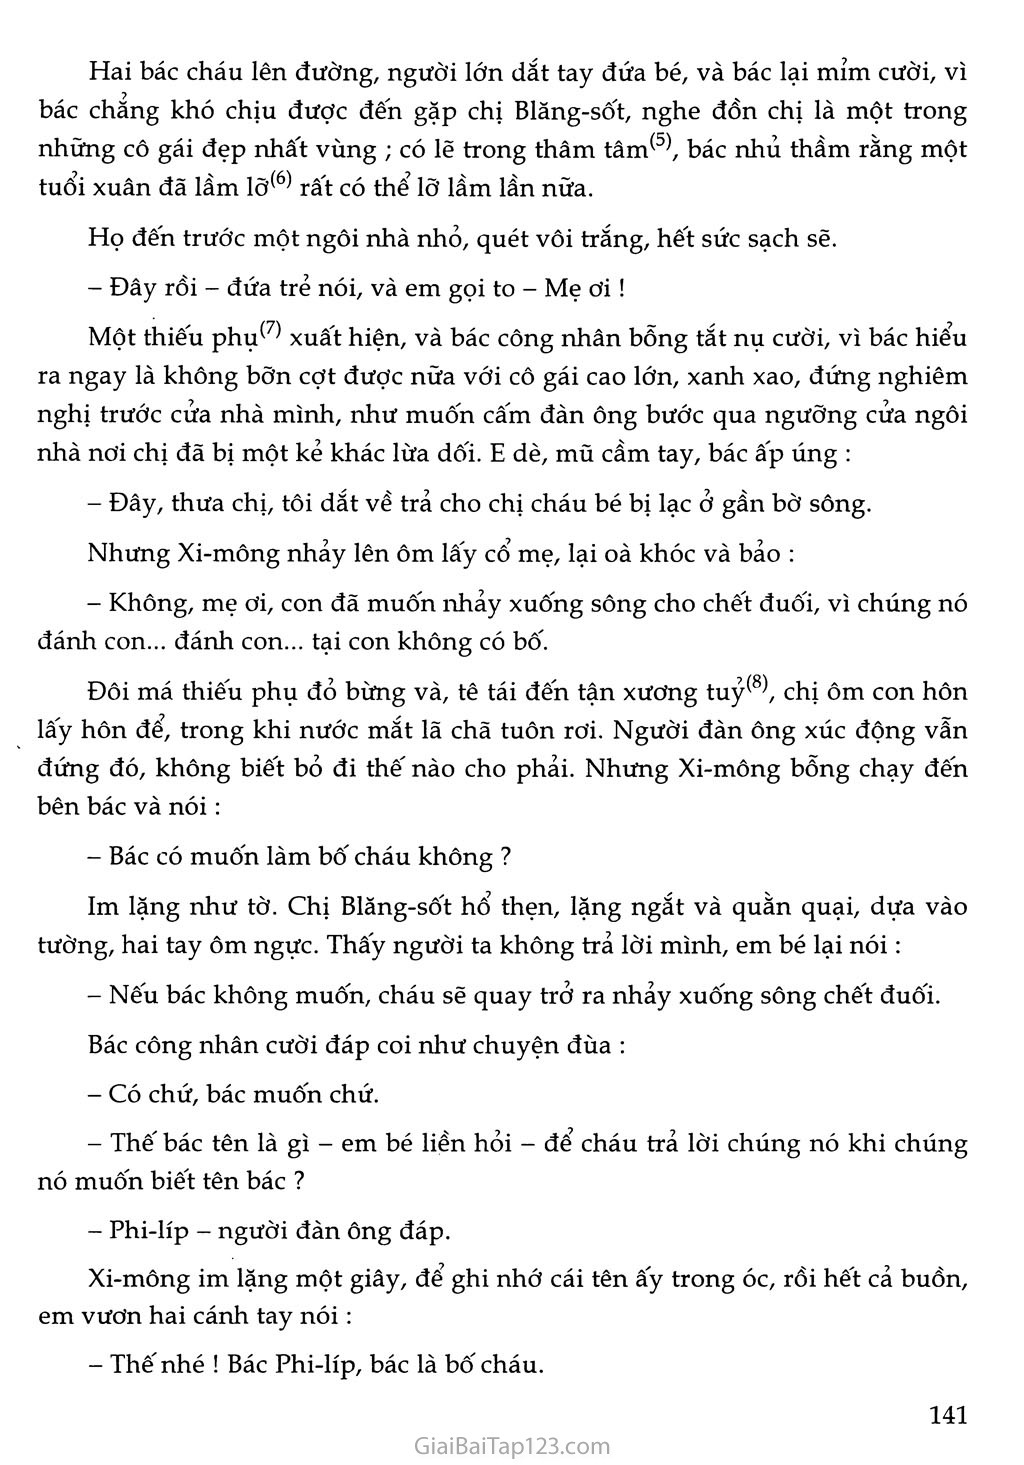 Bố của Xi-mông (trích) trang 3